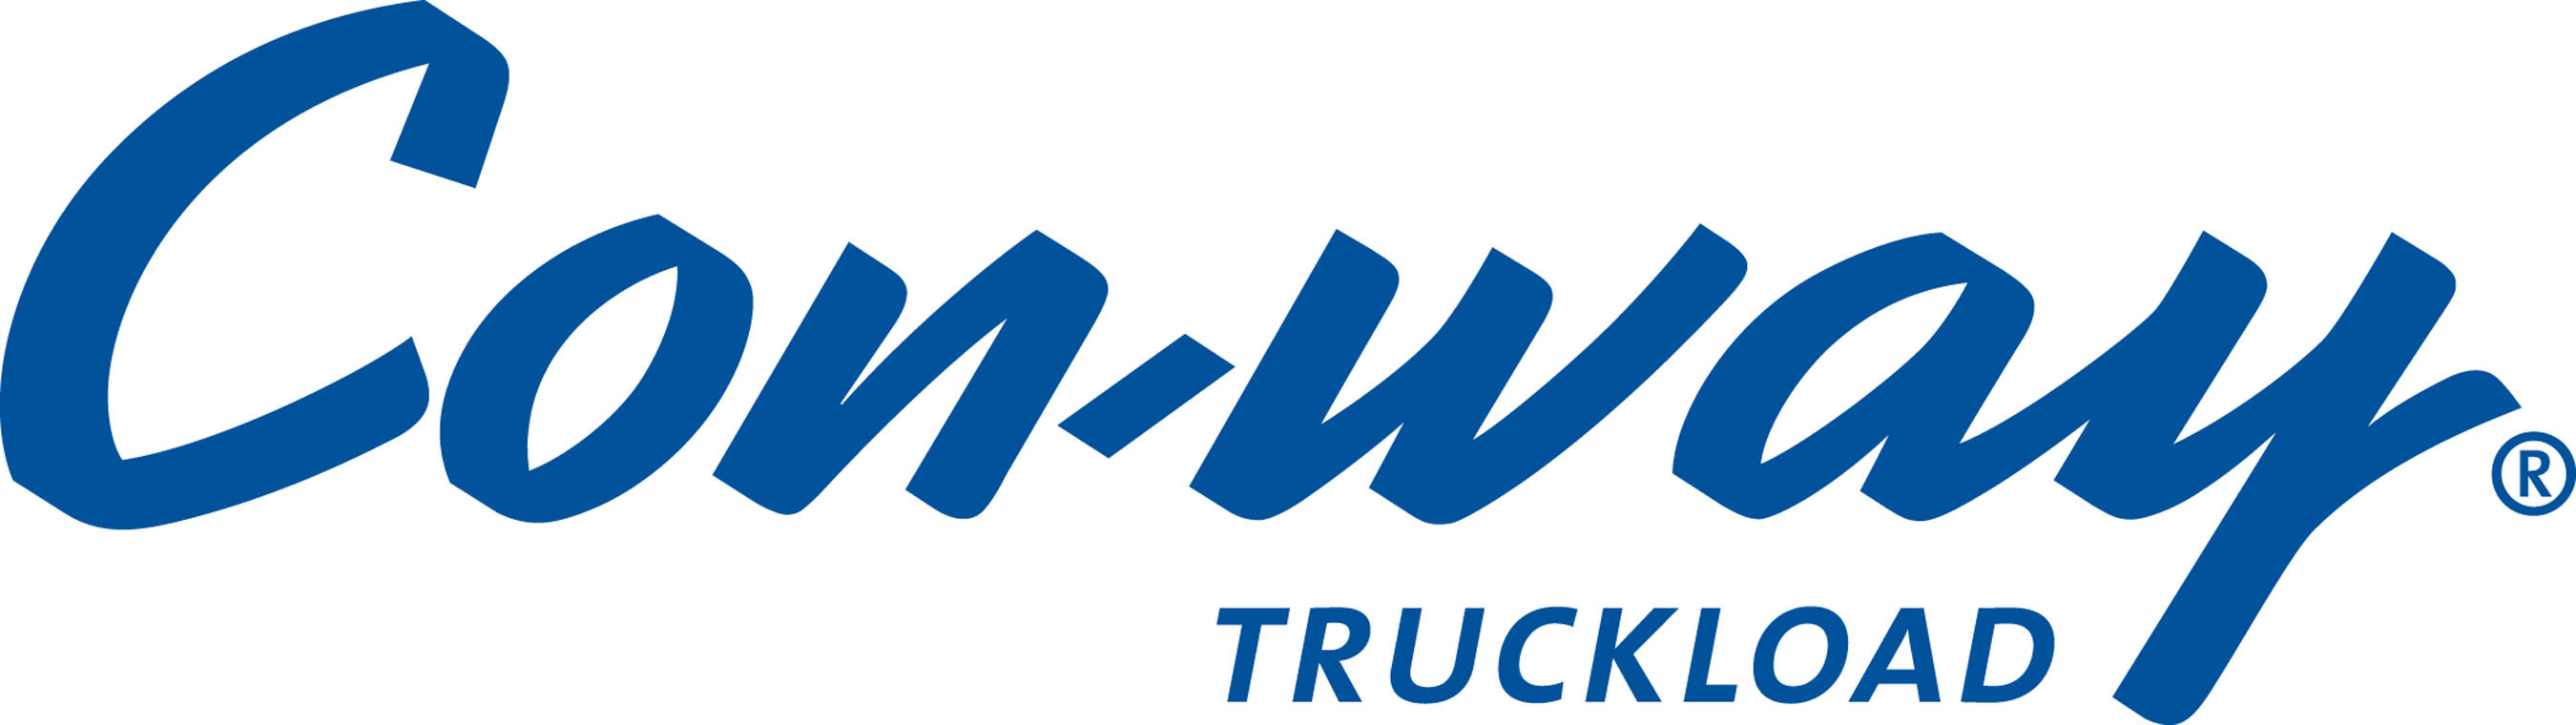 Con-way Truckload Logo. (PRNewsFoto/Con-way Truckload) (PRNewsFoto/)